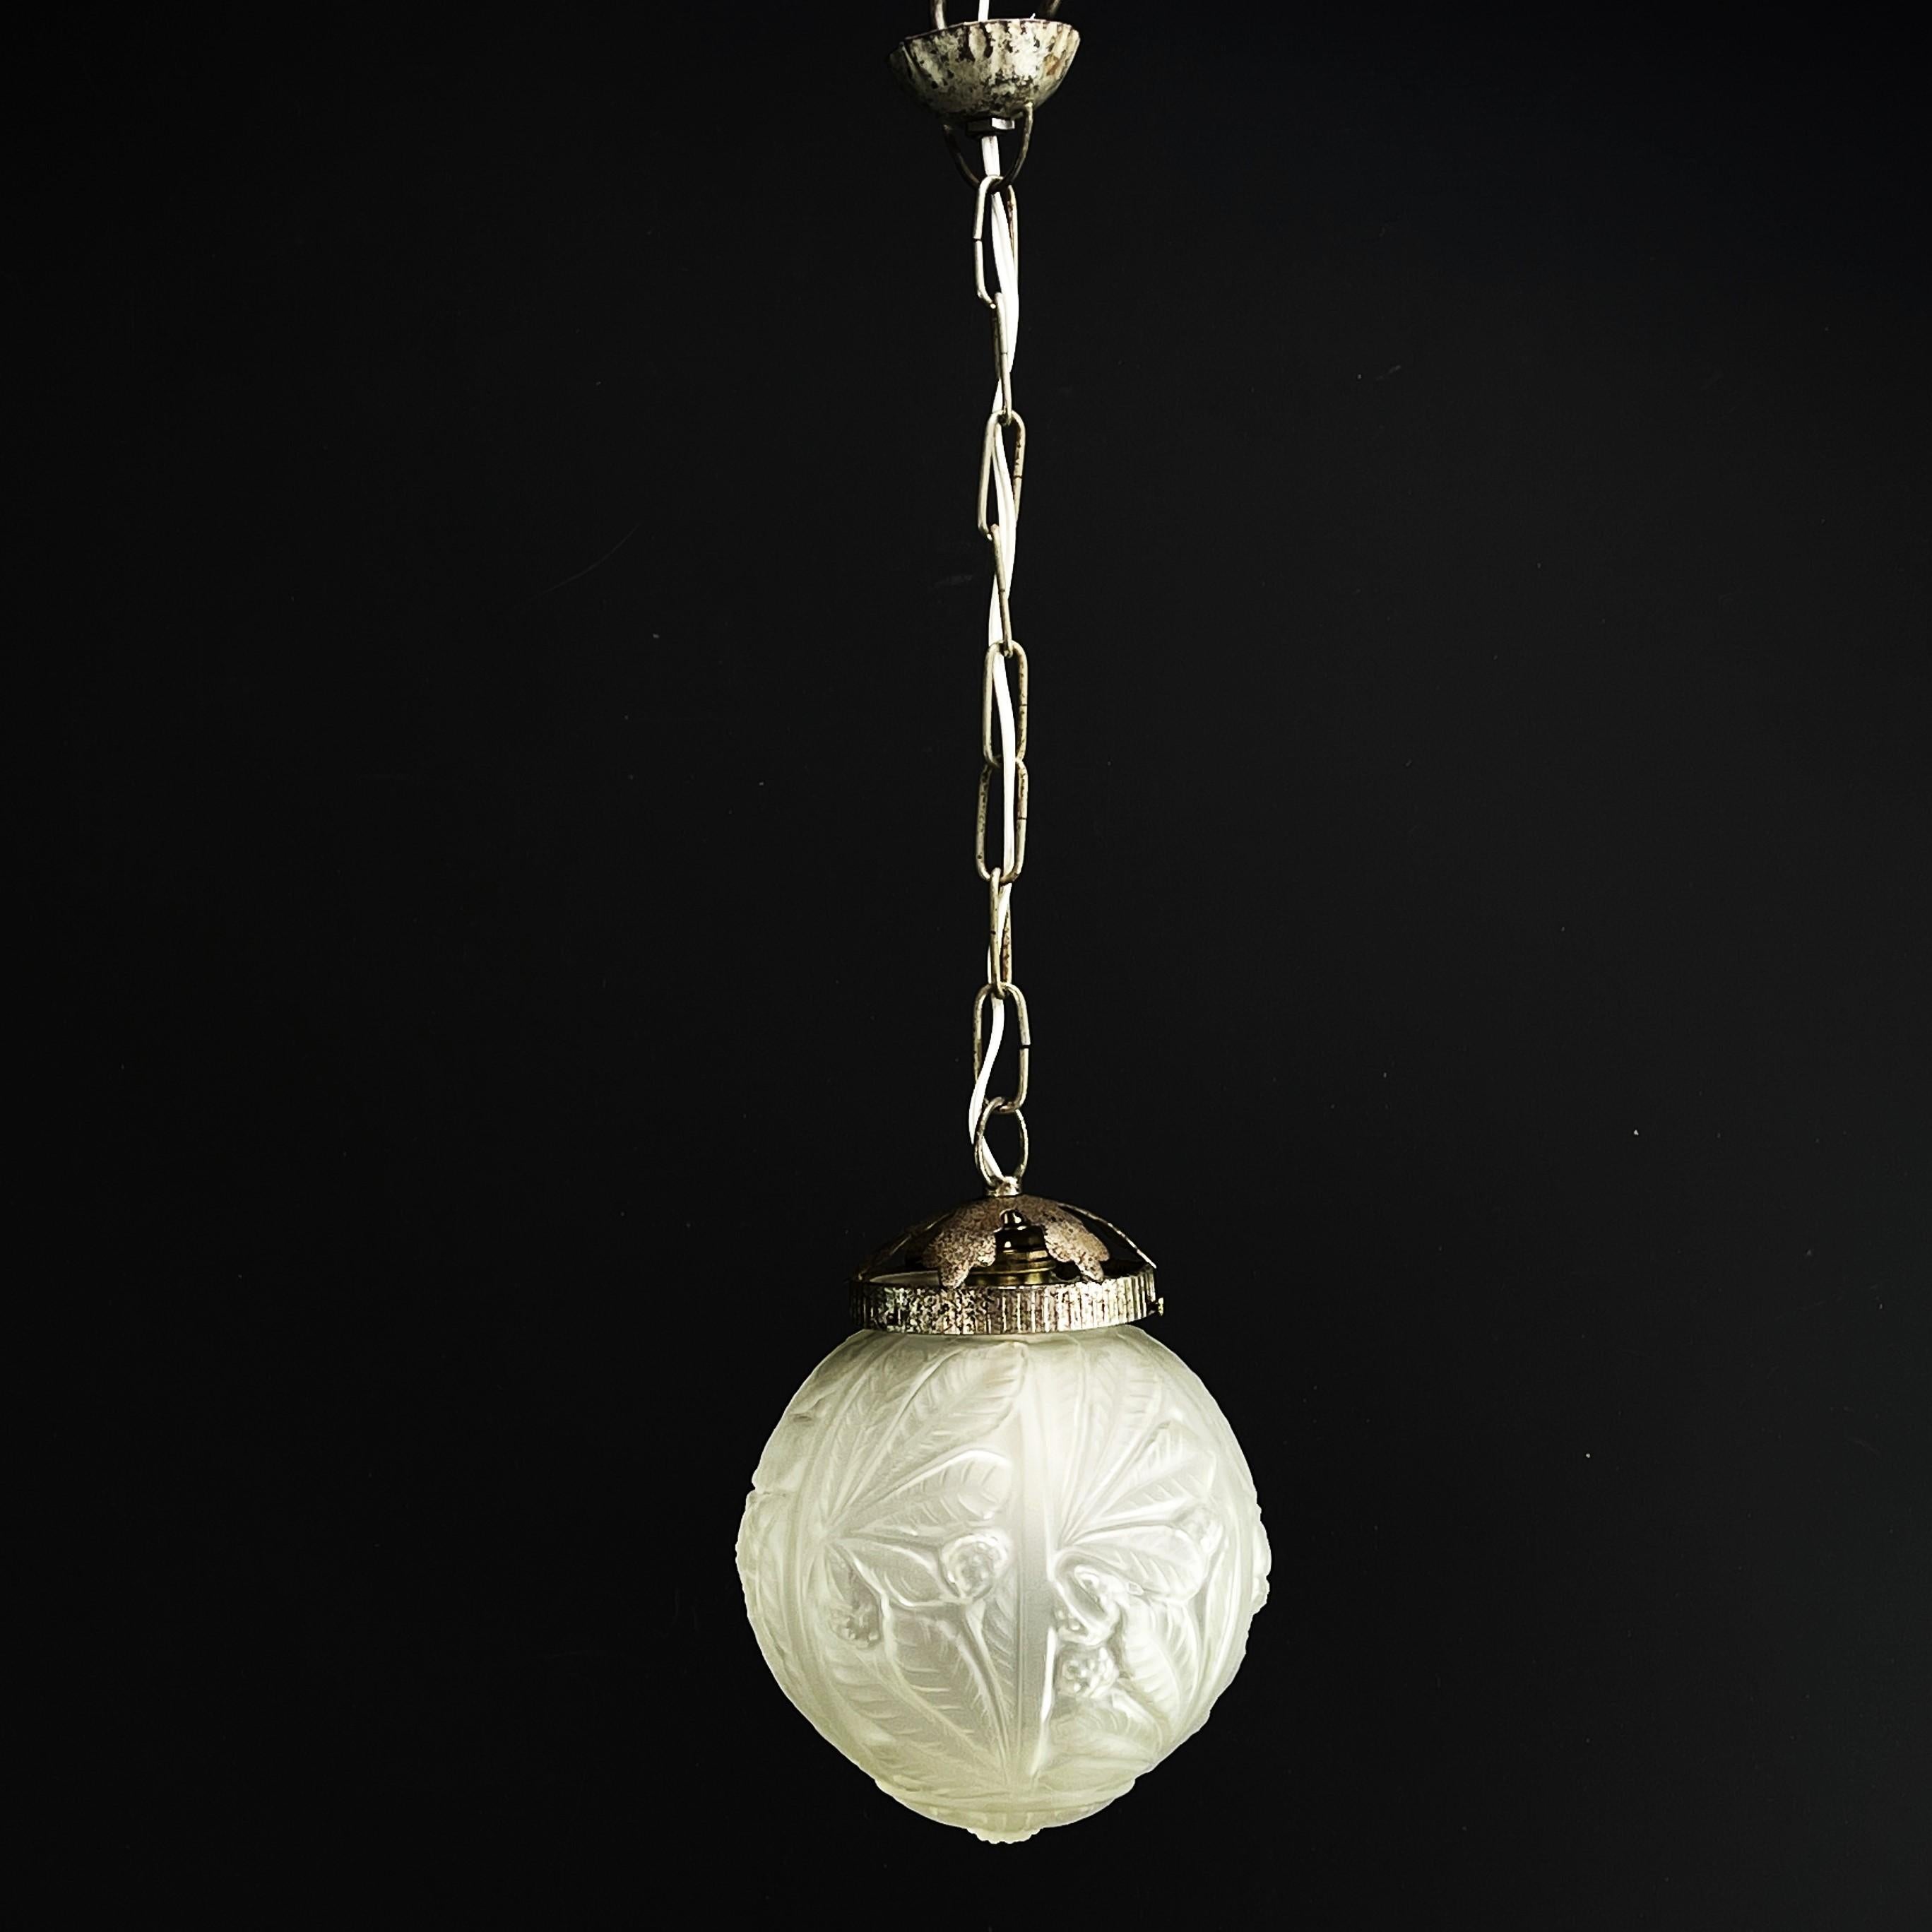 Art-Deco-Lüstre Lampe boule - 1930er Jahre

Cette lampe globe Art déco des années 1930 est un exemple remarquable de l'élégance et de la sophistication du style Art déco. Avec sa combinaison de métal et de verre, ce lustre incarne le glamour de